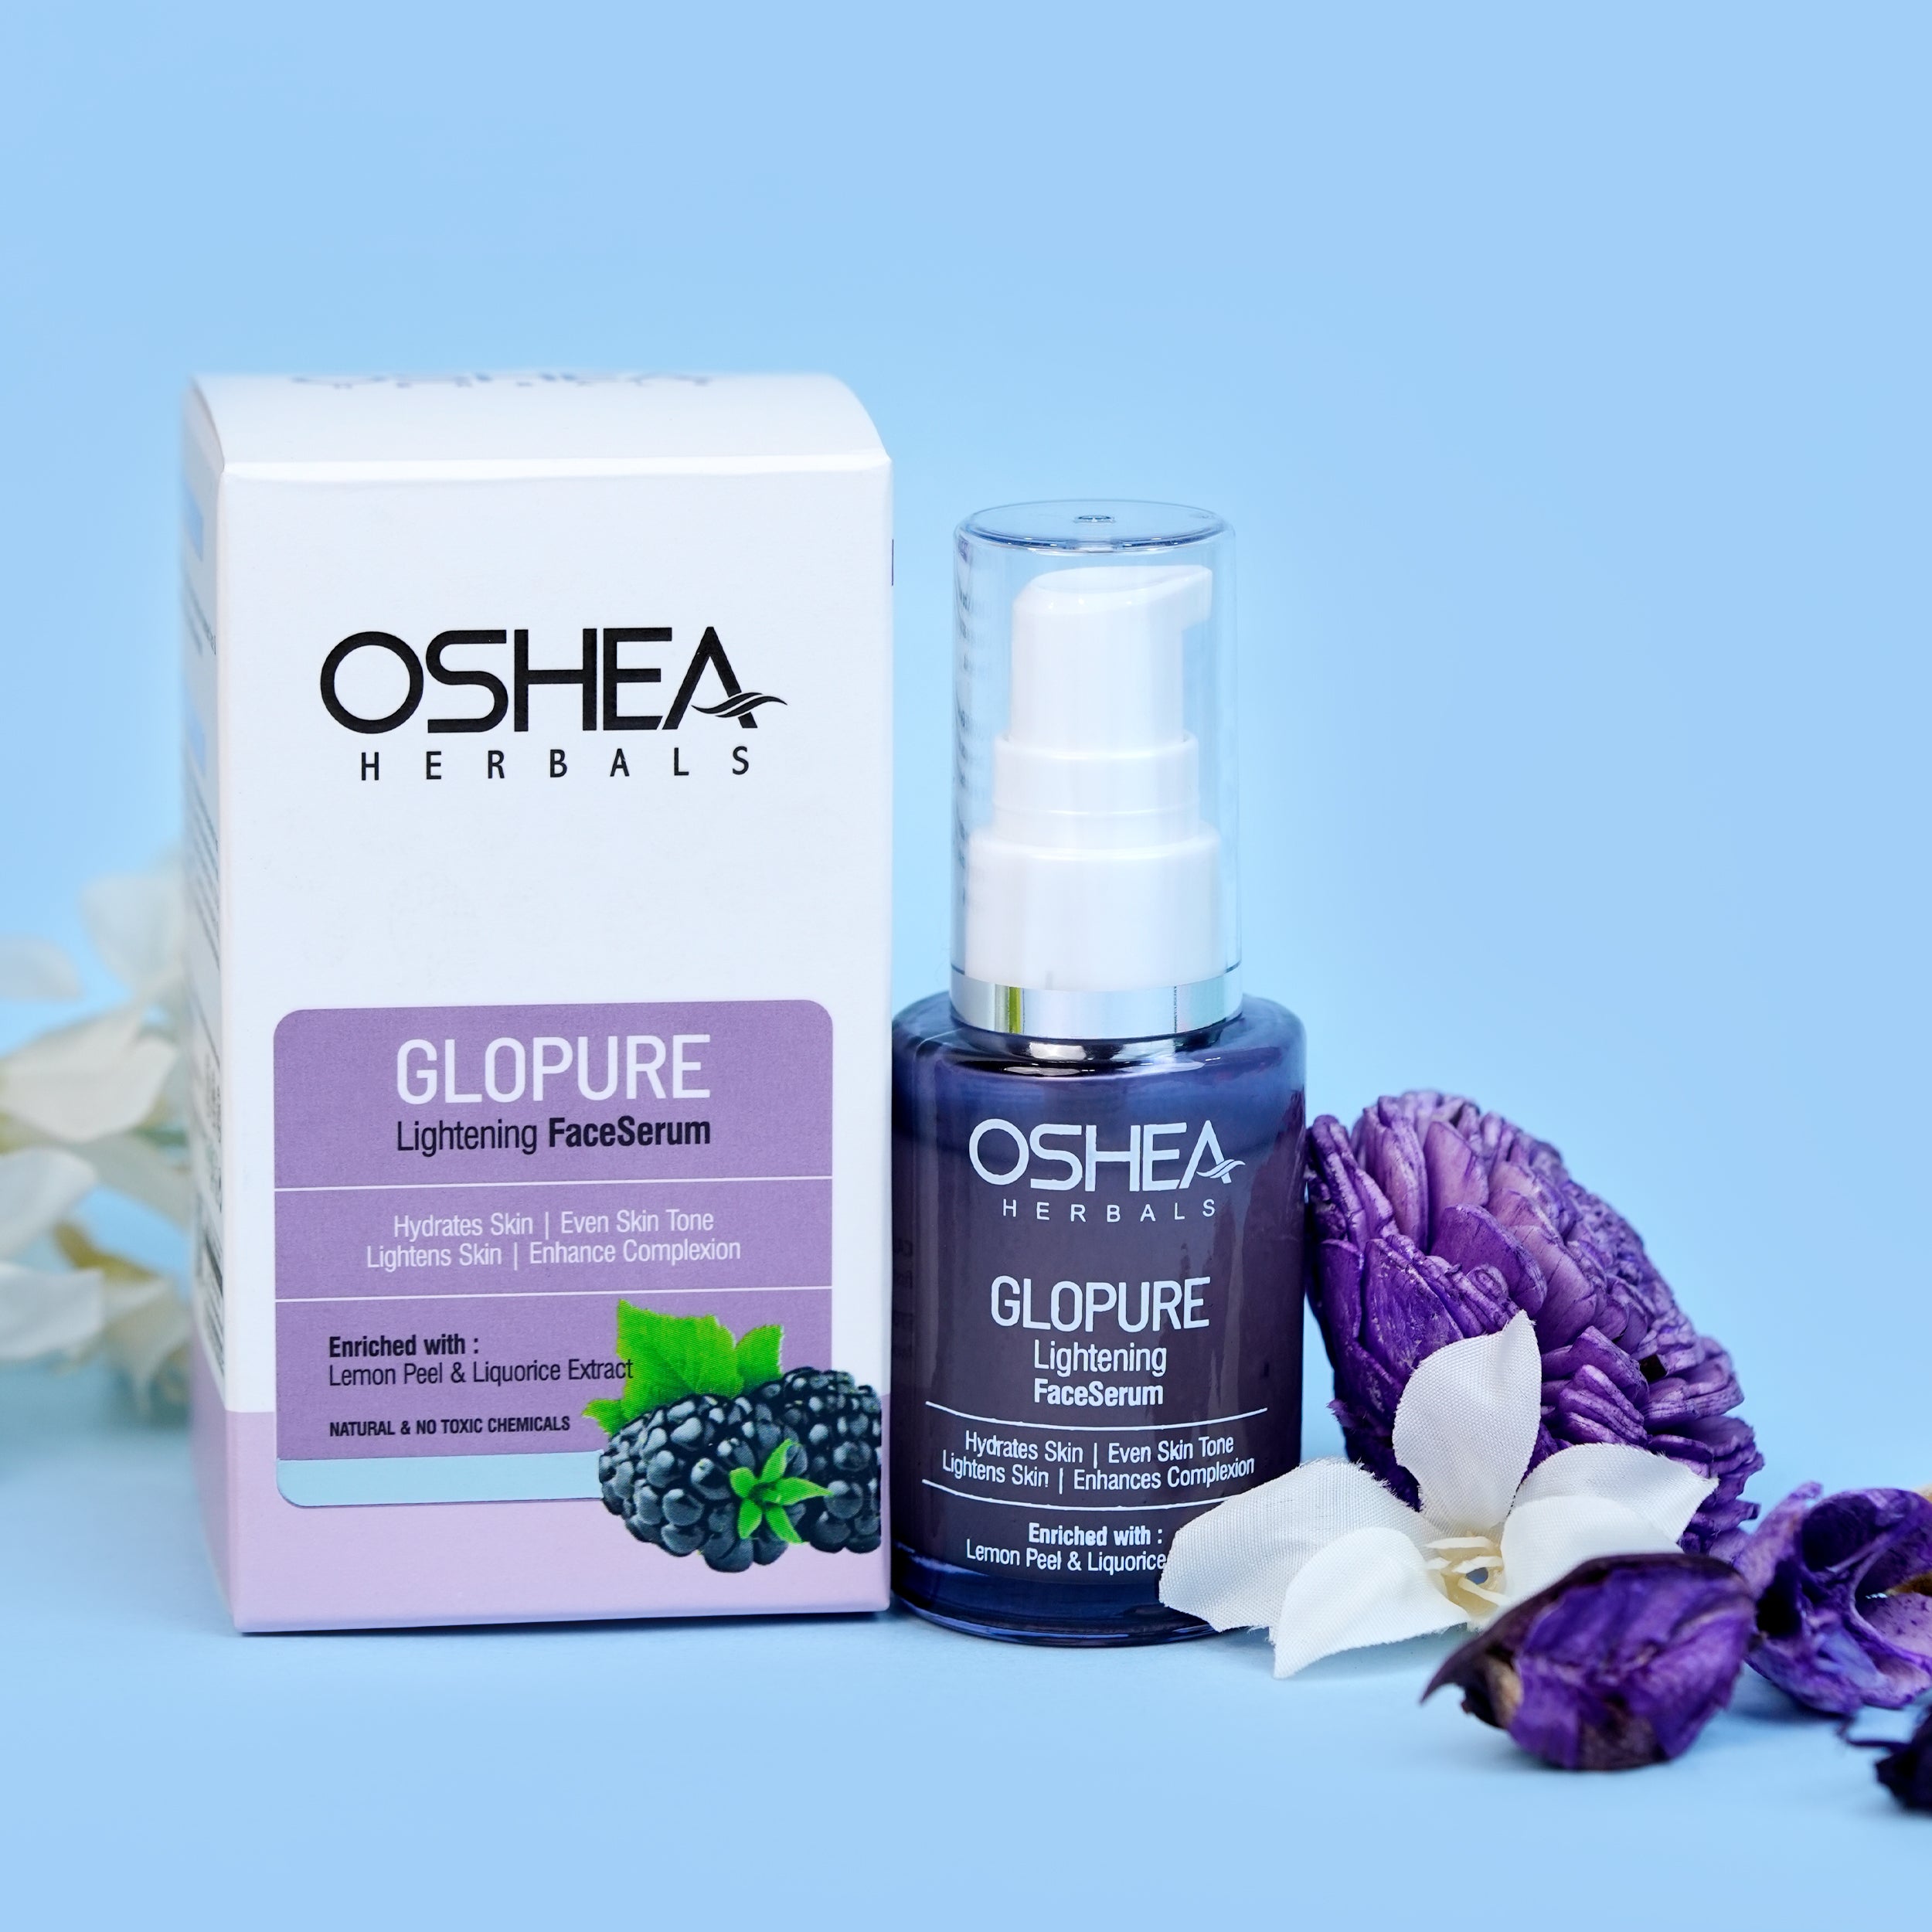 Glopure Lightening Face Serum Oshea Herbals